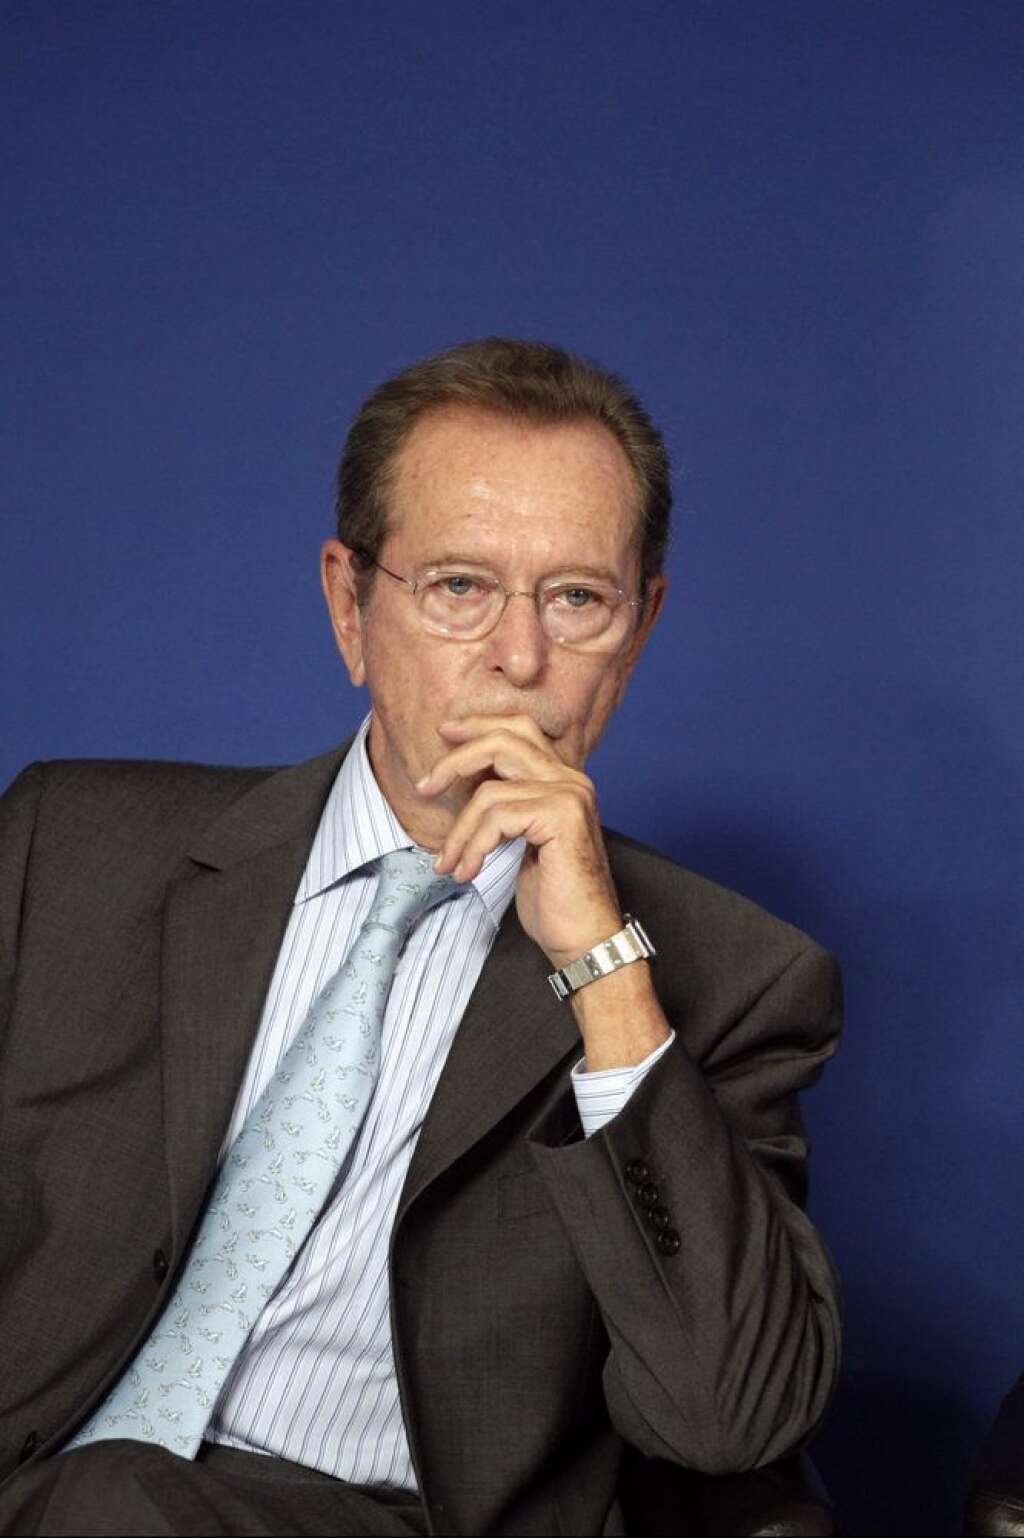 10 avril - Dominique Baudis - L'ancien maire de Toulouse et ex-président du CSA est décédé à l'âge de 66 ans des suites d'une longue maladie.